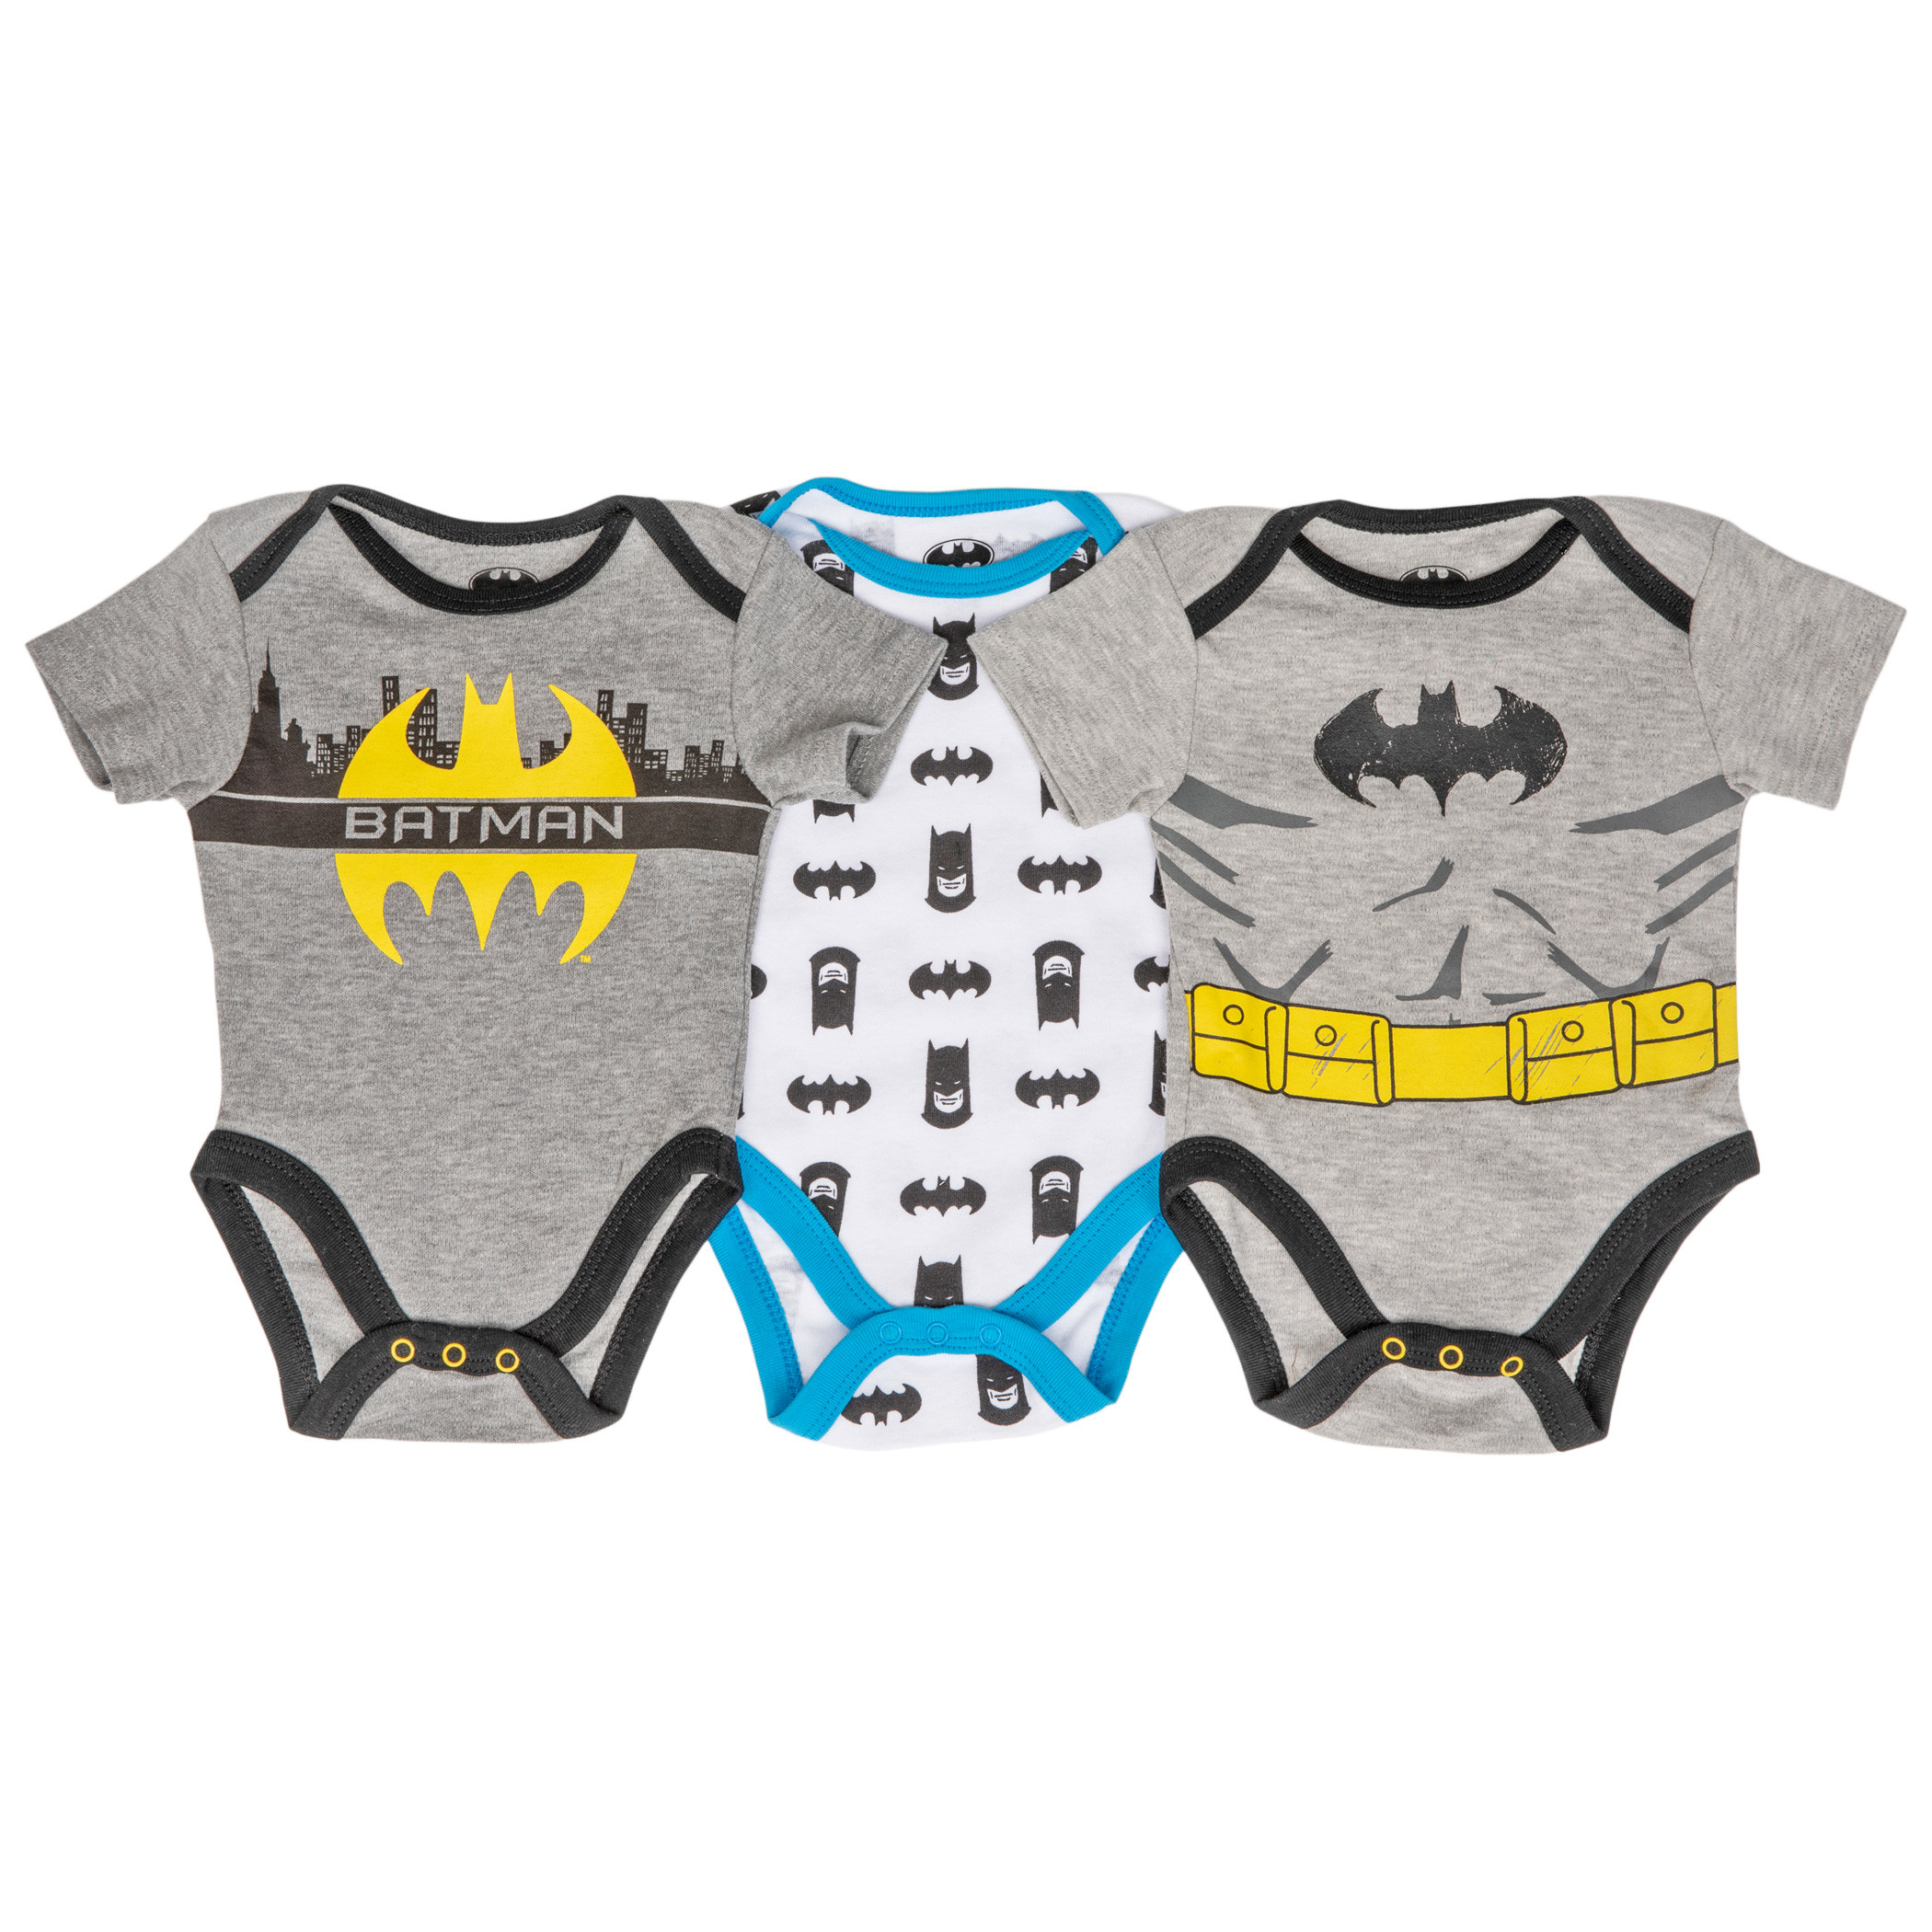 Batman Classic 3-Pack Infant Bodysuit Set